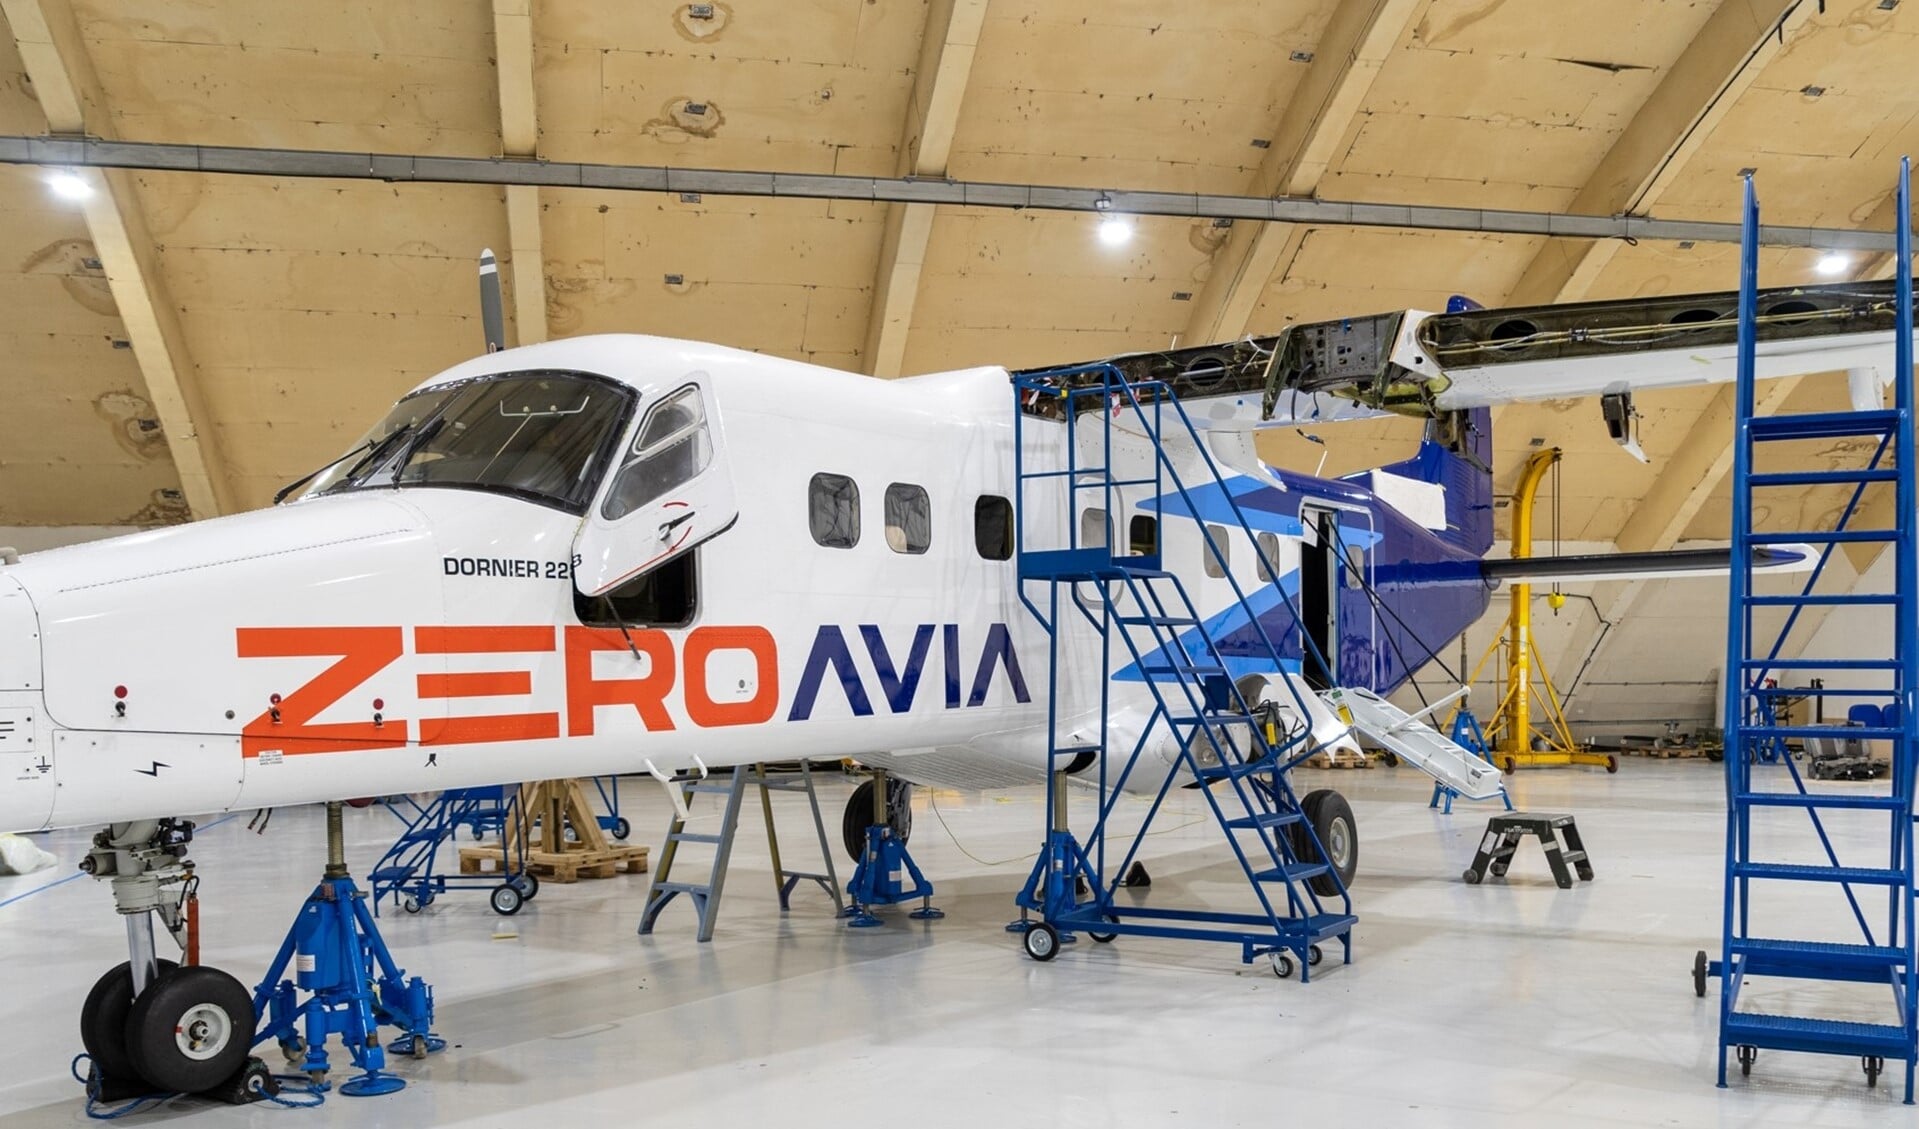 Het toestel, een Dornier 228, dat ontwikkeld wordt door ZeroAvia, gaat geheel op waterstof vliegen. Foto: ZeroAvia/RTHA